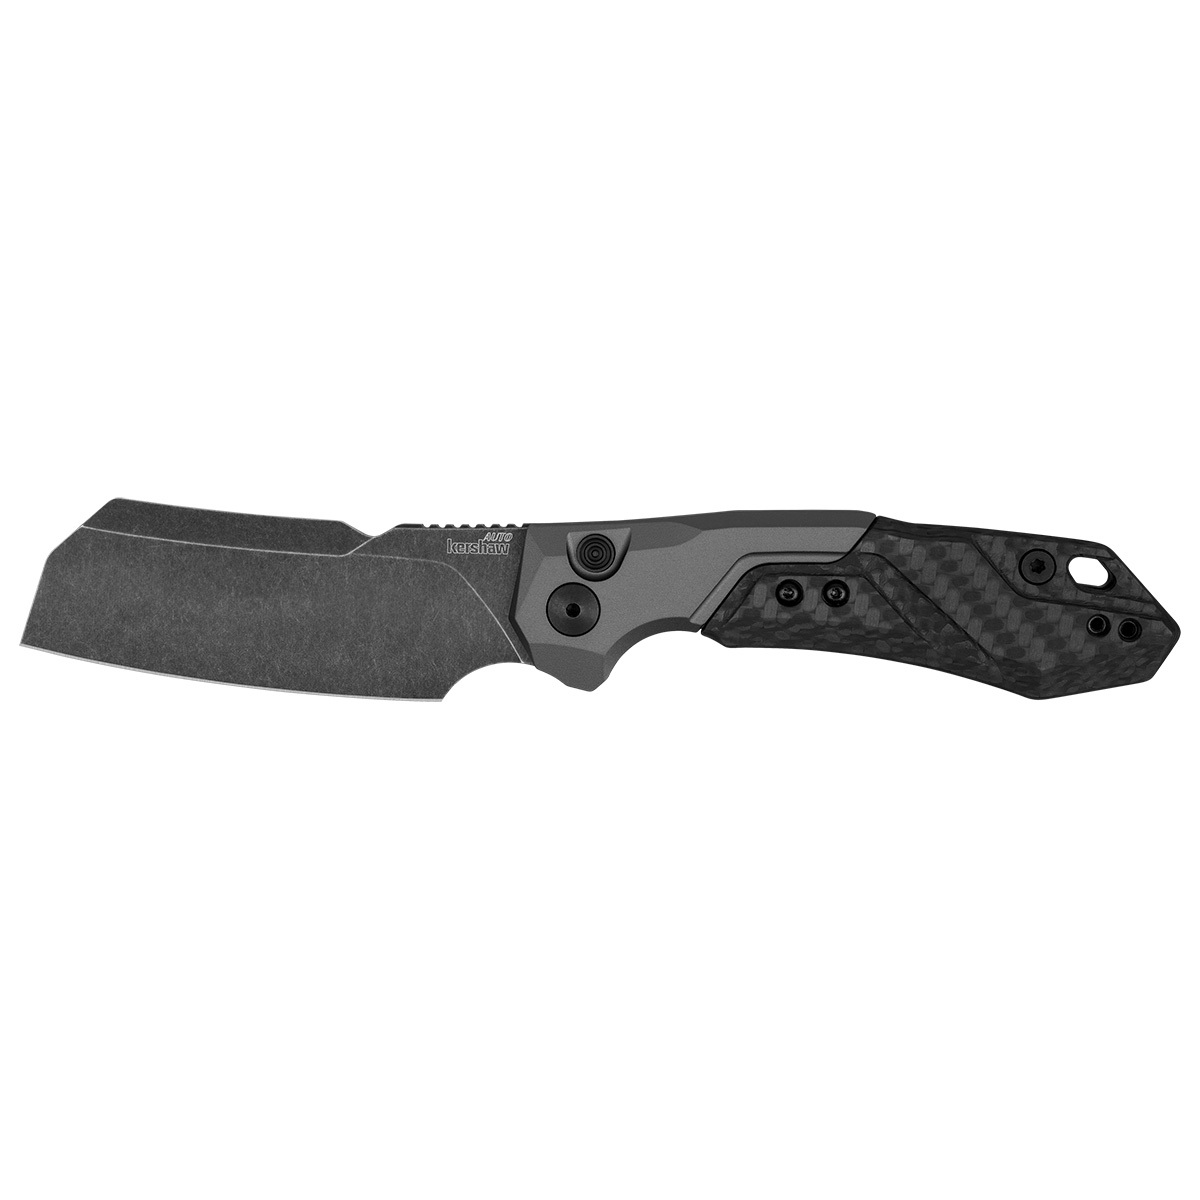 Складной нож Kershaw Launch 14, сталь CPM154, рукоять алюминий/Carbon fiber складной нож boker chiisai черная рукоять g10 сталь 440a